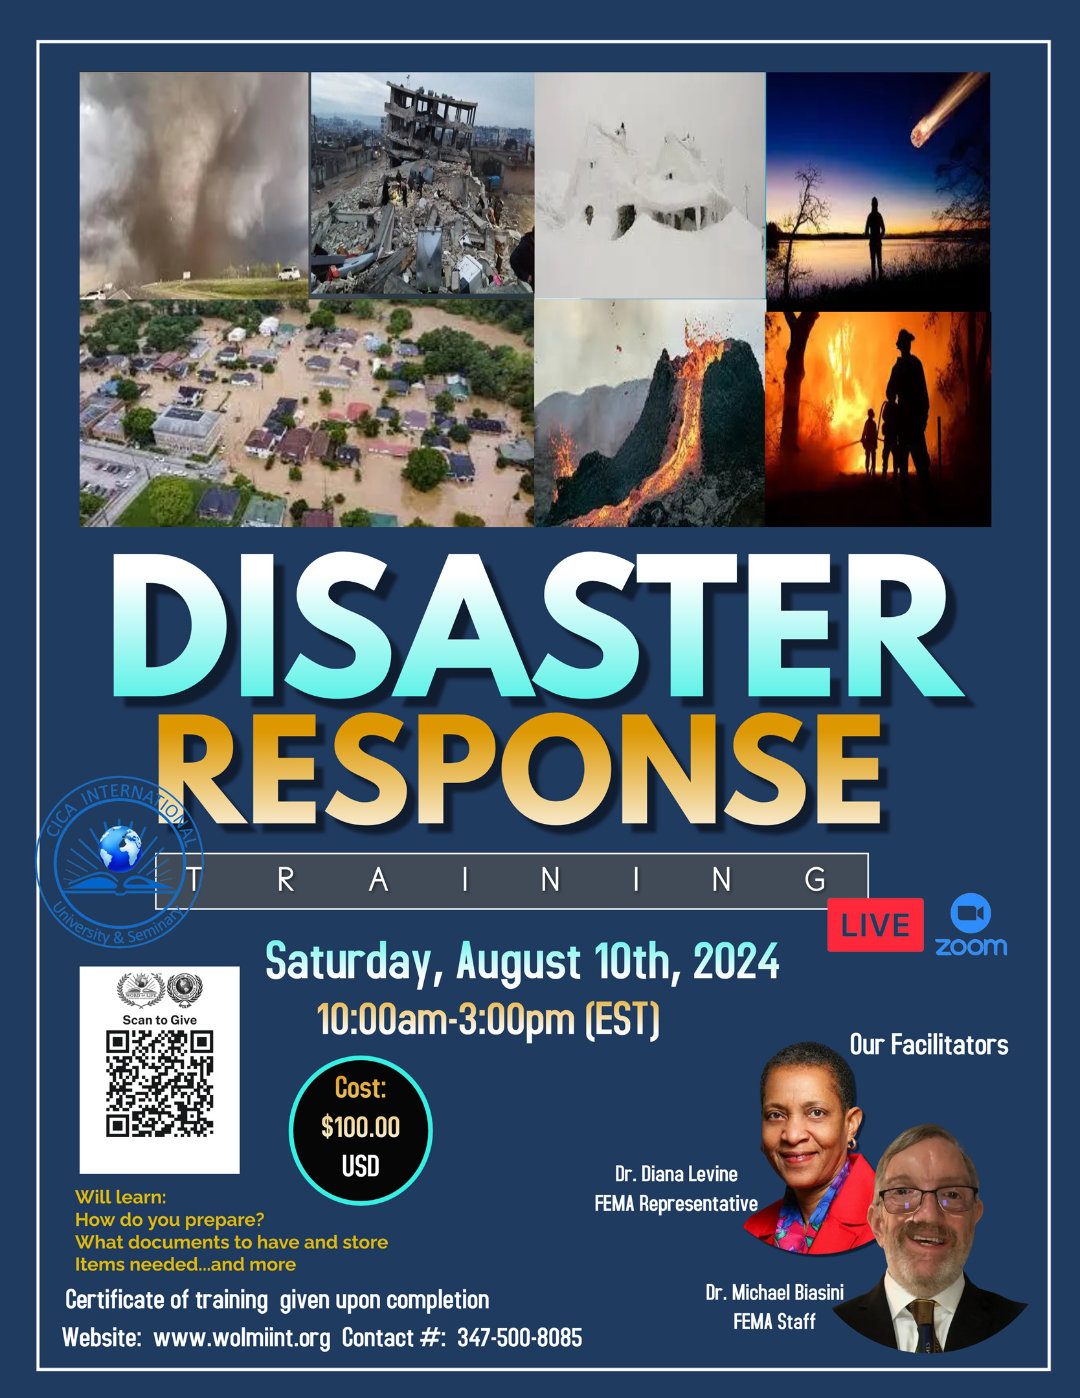 Disaster Response Training